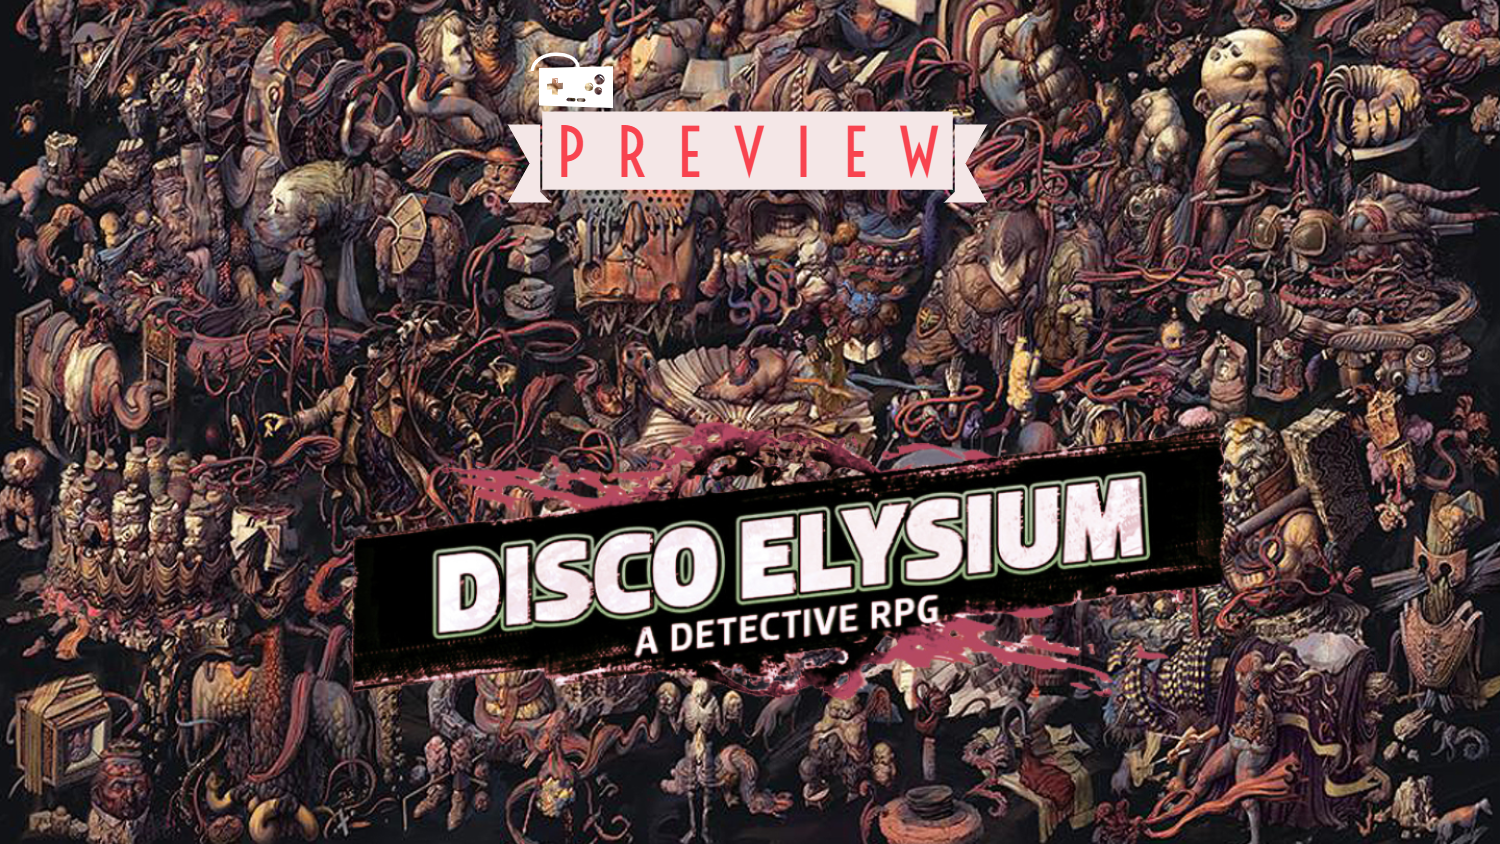 Disco elysium гайд по прохождению игры - gameeducation